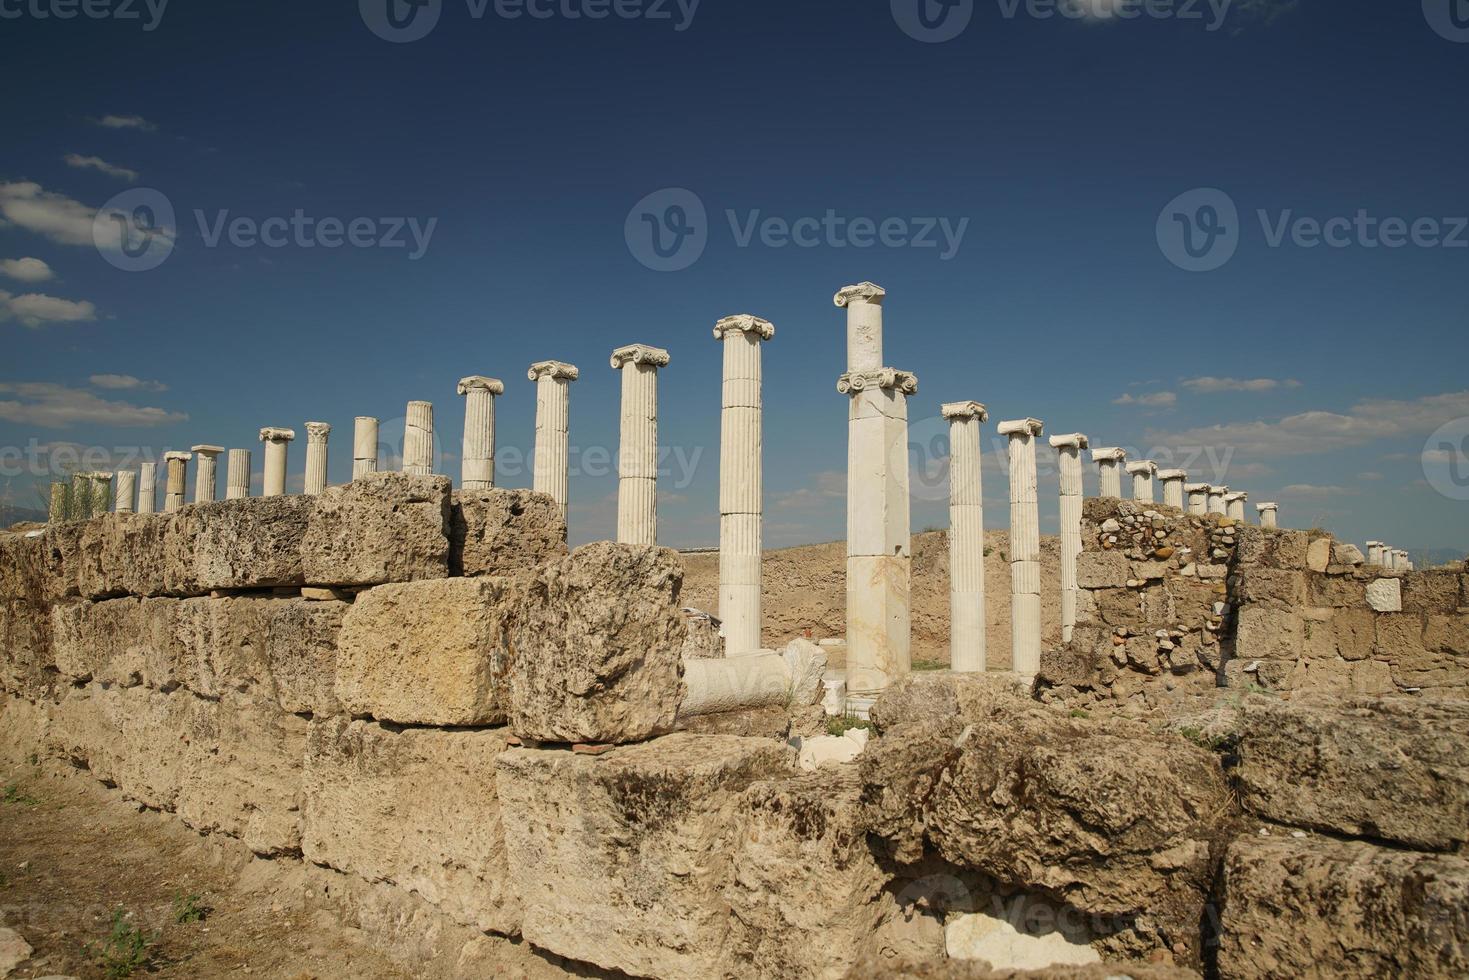 colonne nel laodicea su il liceo antico città nel denizli, turkiye foto